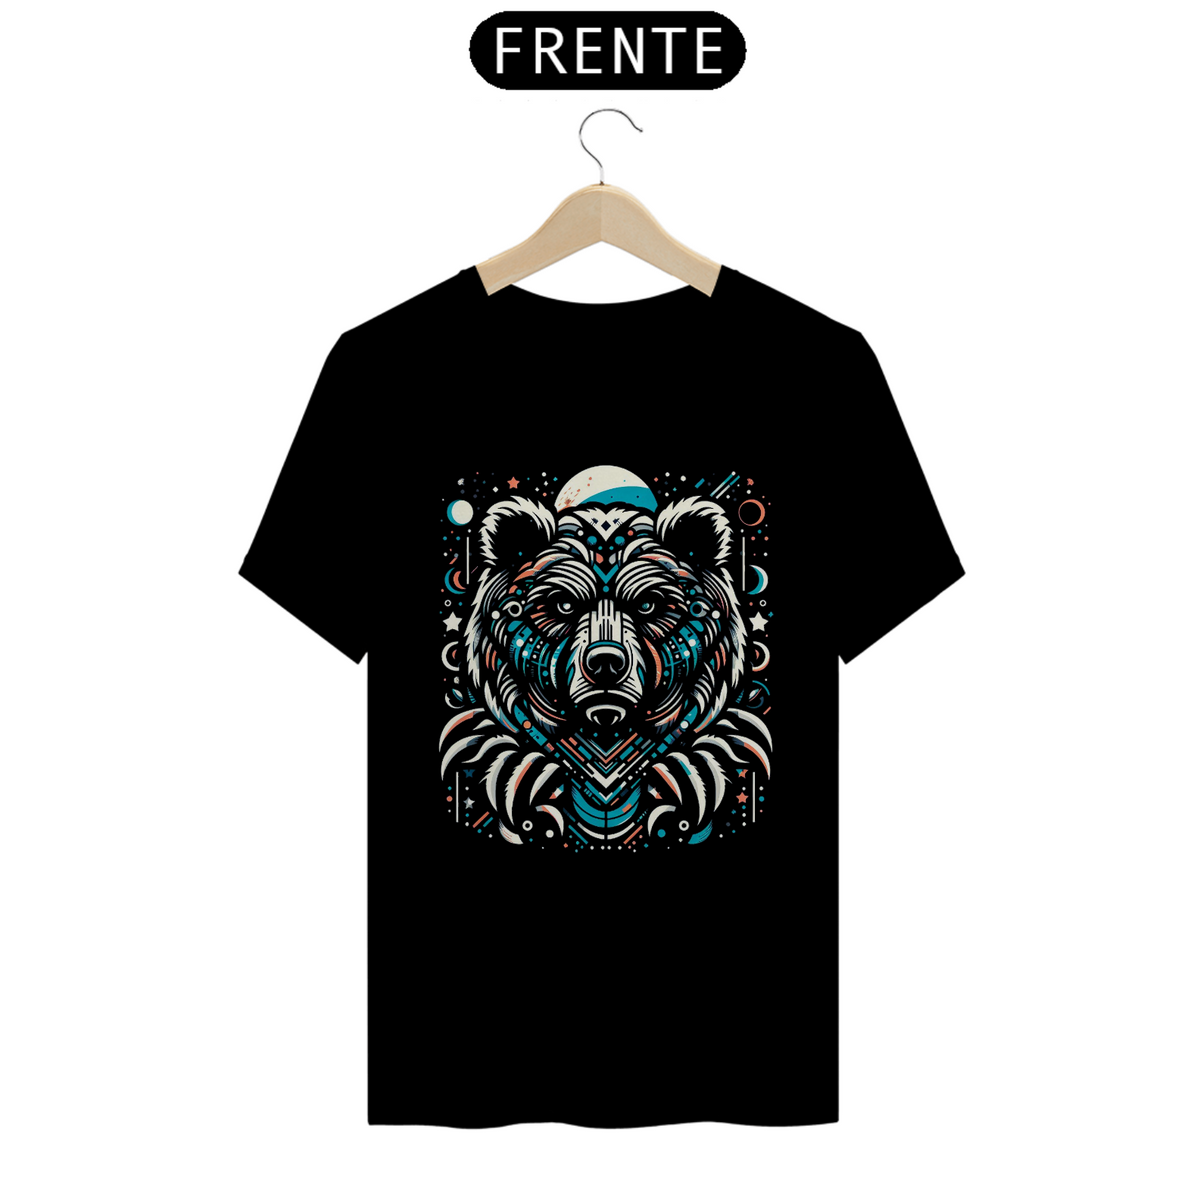 Nome do produto: T-Shirt Urso Cósmico